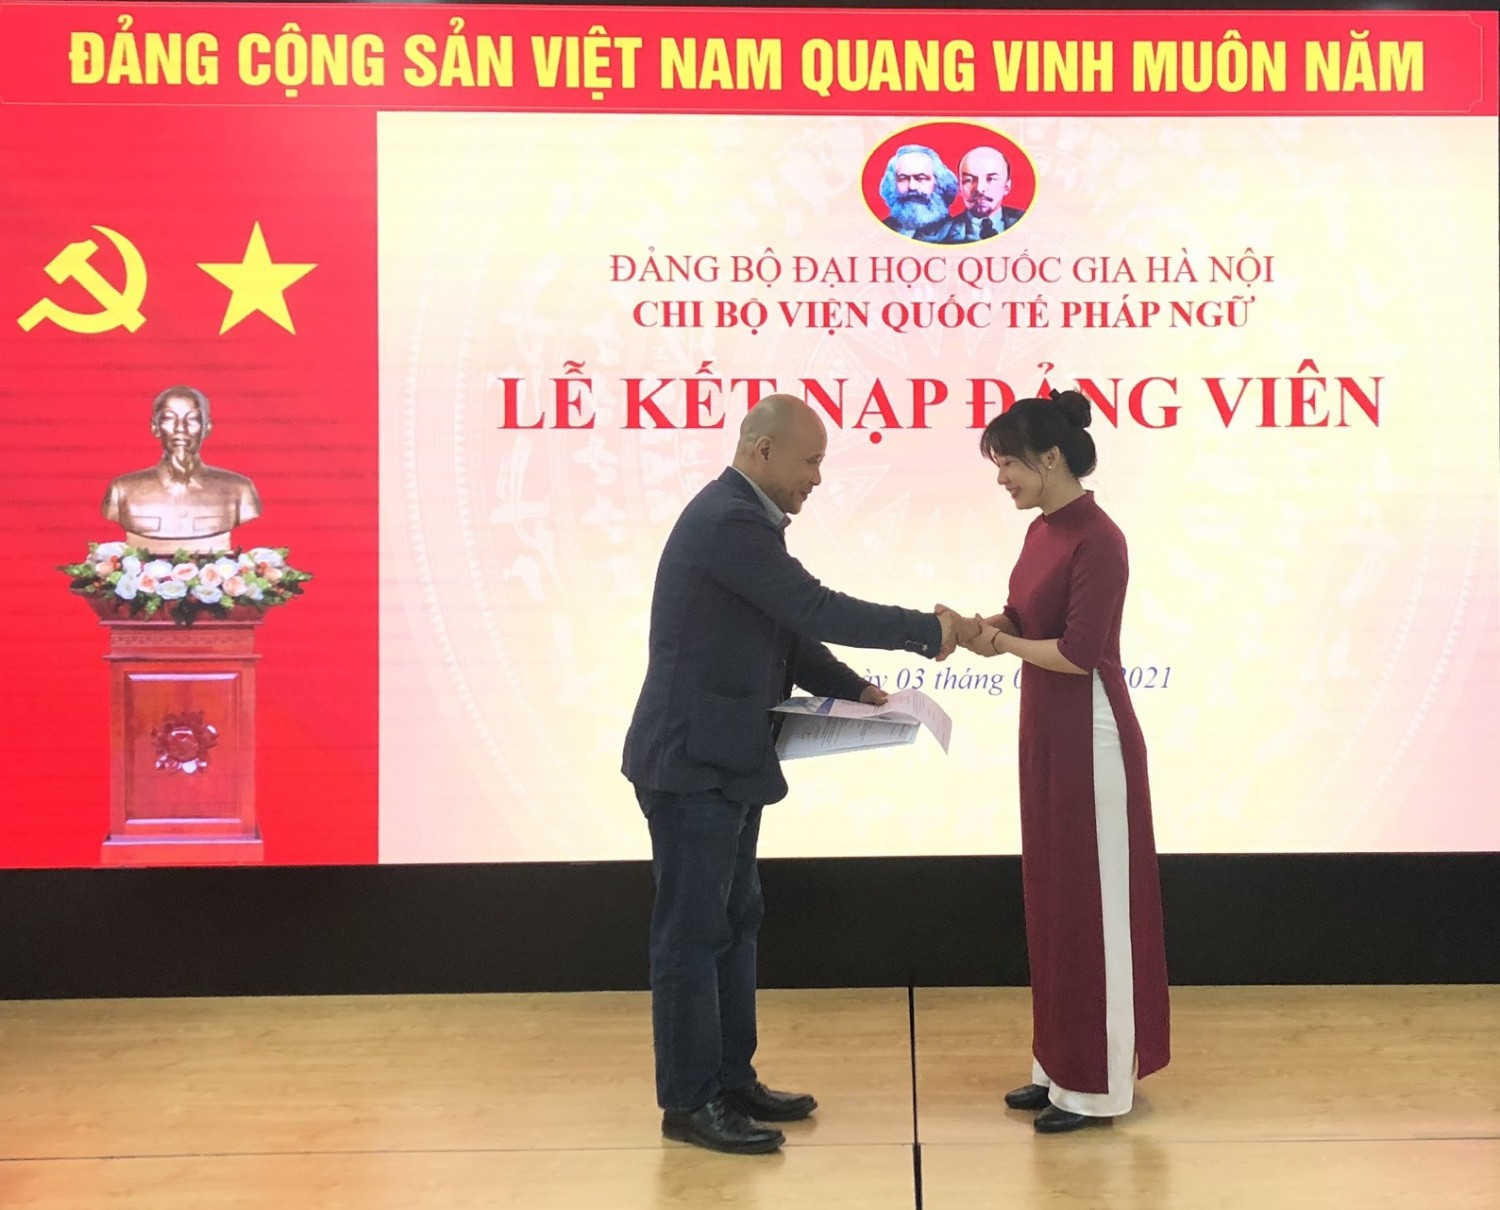 Đ/c Ngô Tự Lập - Bí Thư Chi bộ Viện trao quyết định kết nạp Đảng viên cho đ/c Nguyễn Thị Thu Hằng